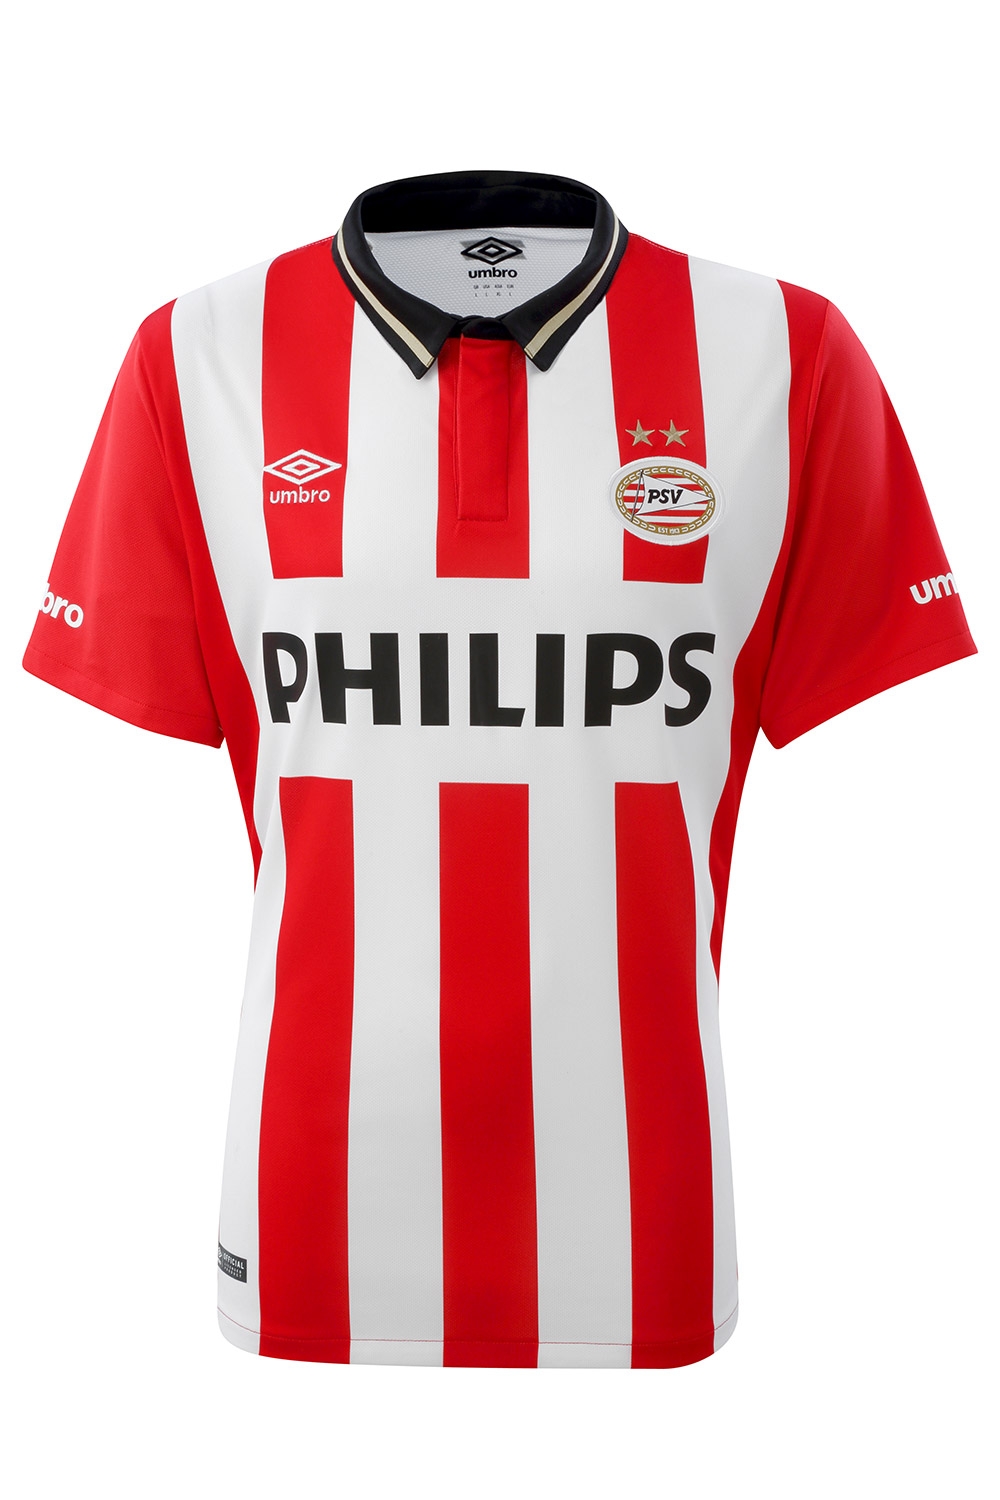 Sprong Het beste opener PSV thuisshirt 2016 - PSV shirt 15/16 kopen